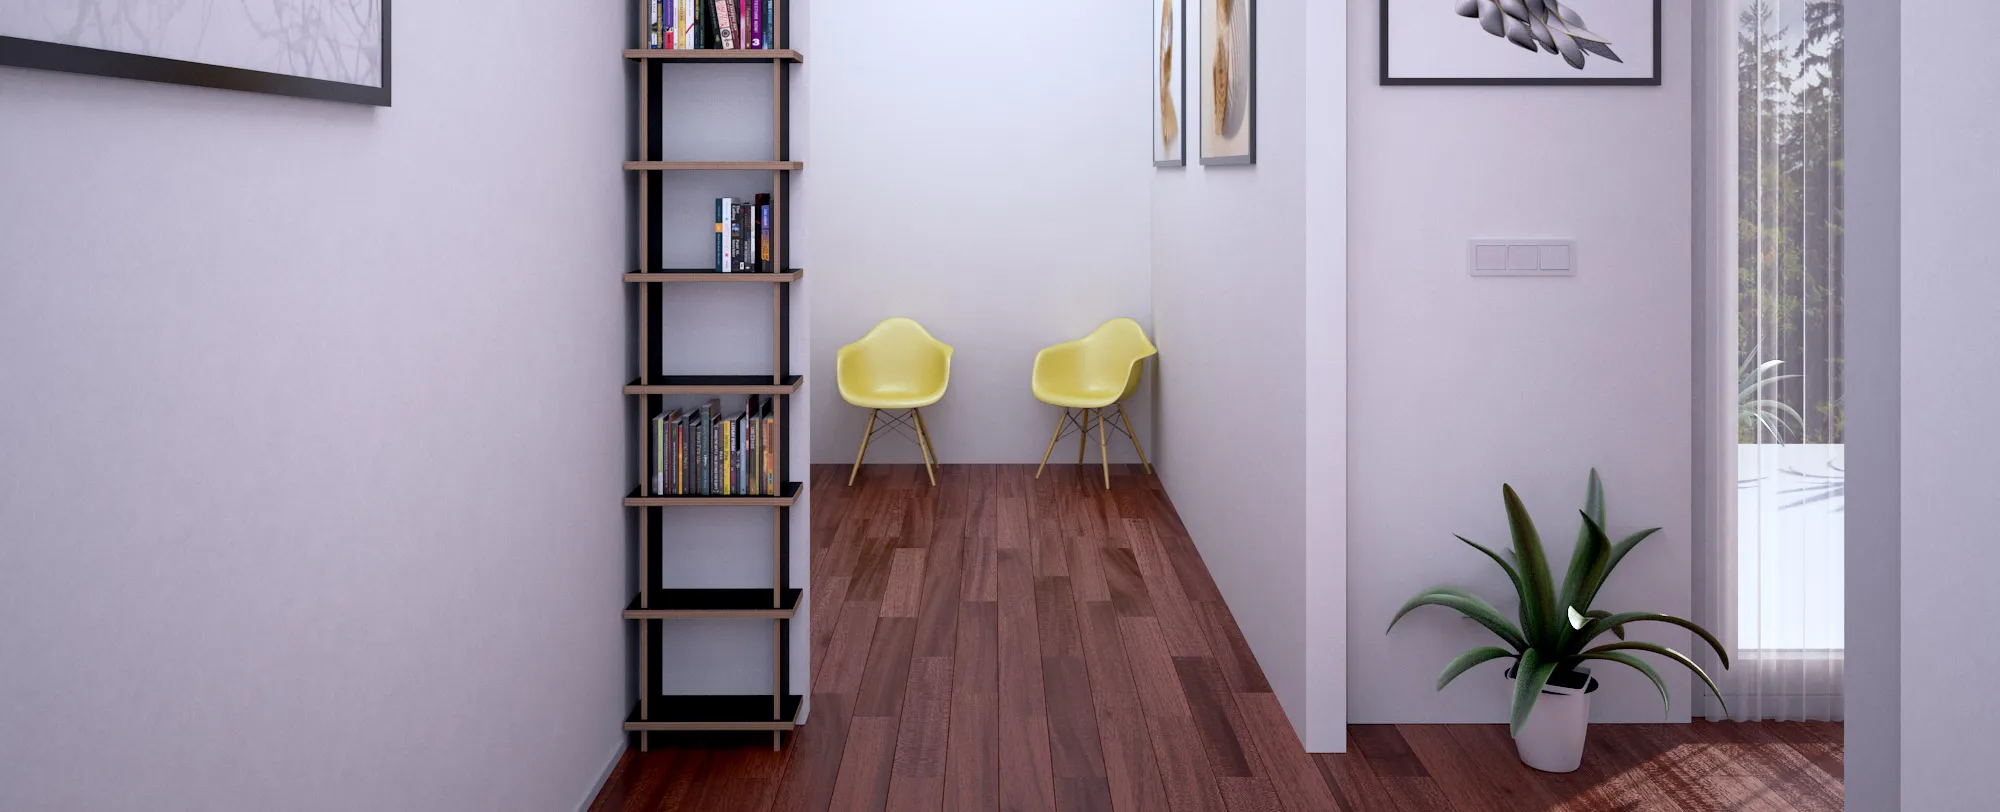 form.bar shelf as a hallway furniture piece